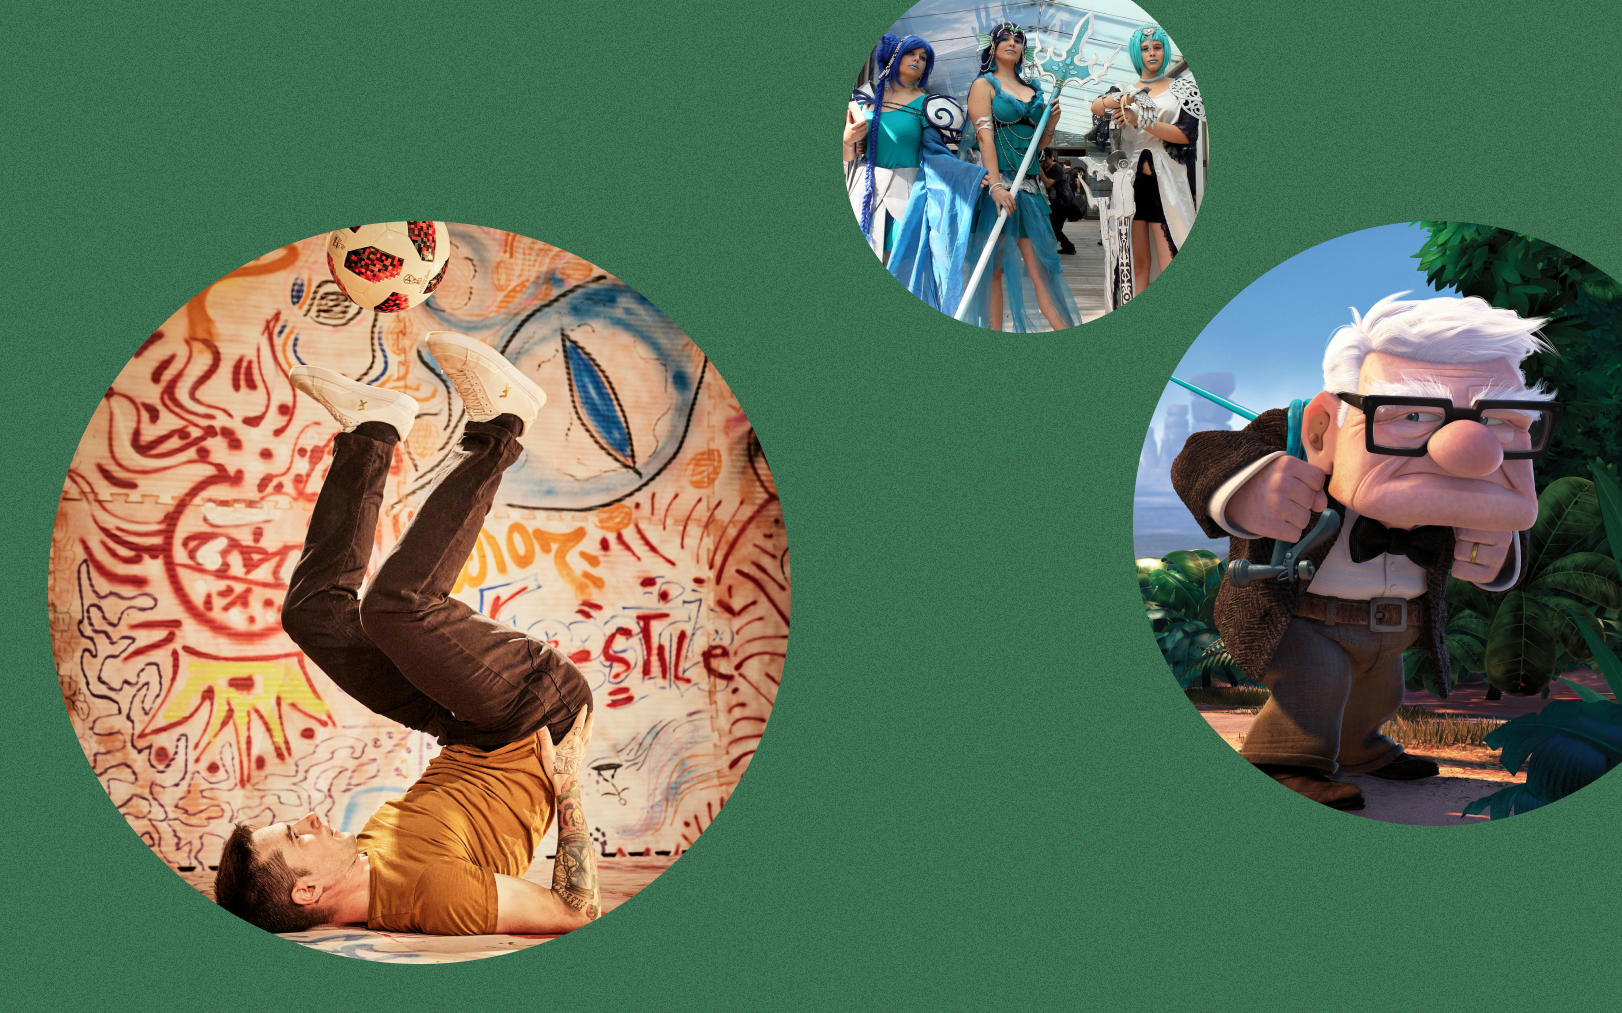 Parmi nos suggestions pour ce week-end : le festival Rencontre des jonglages, l'incontournable Fan Festival, et «Là-haut», pépite des studios Pixar, sur grand écran. Le Parisien DA - LP/Yann Foreix; Christophe Raynaud de Lage; Pixar animation studios